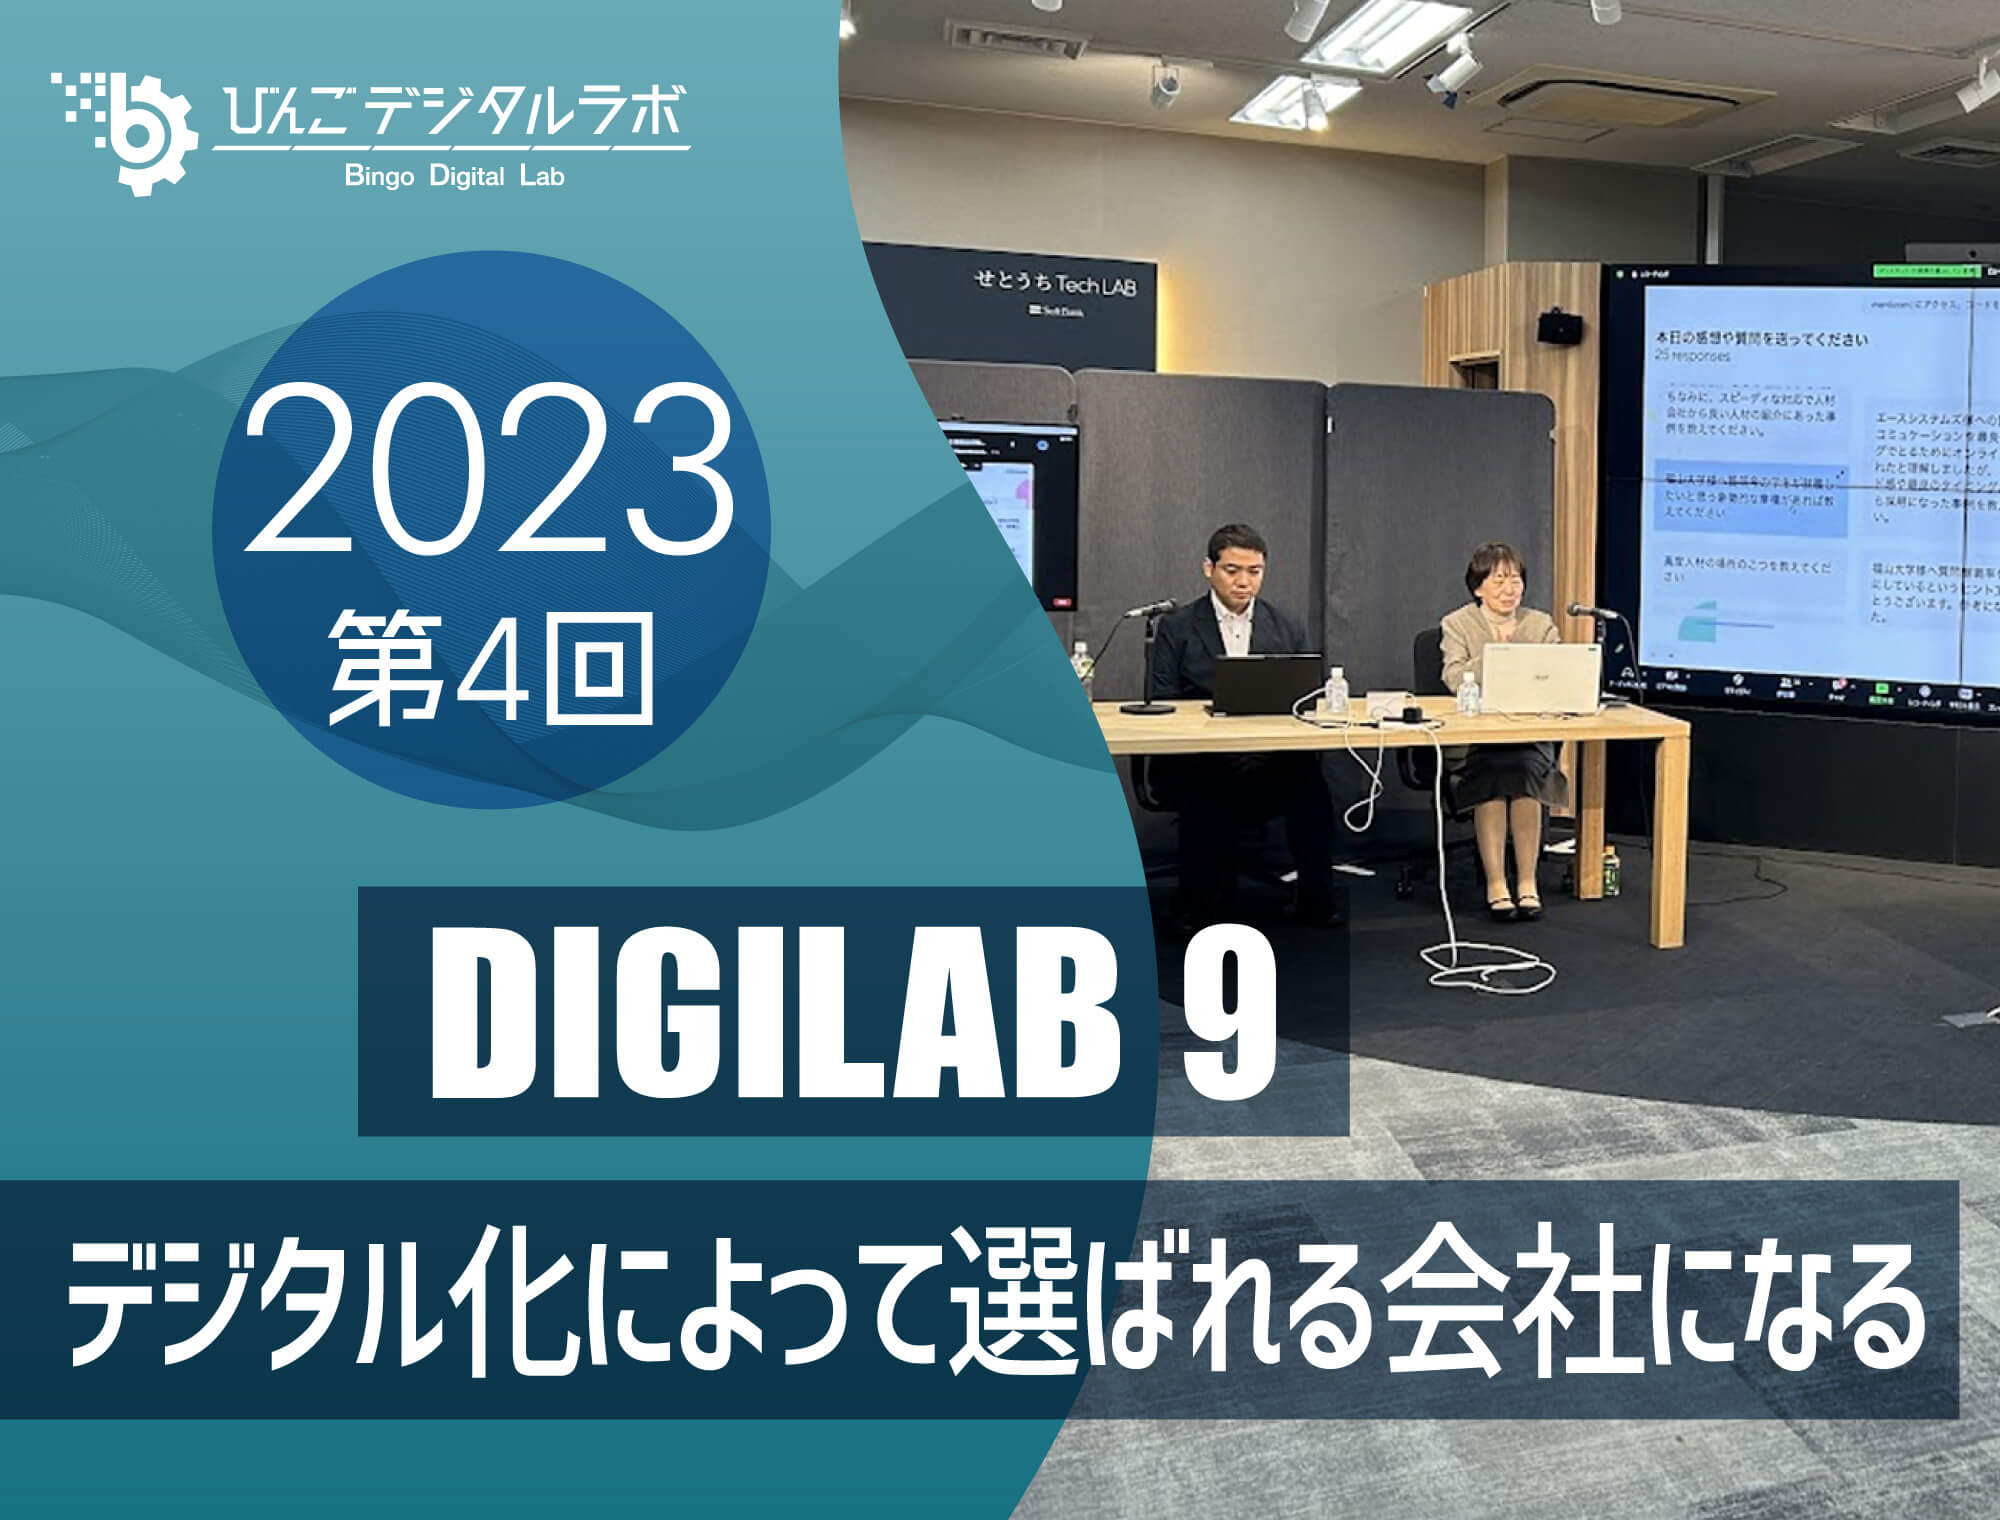 2023年度 第4回びんごデジタルラボイベント『DIGILAB9』を実施しました ～「デジタル化によって選ばれる会社になる」～